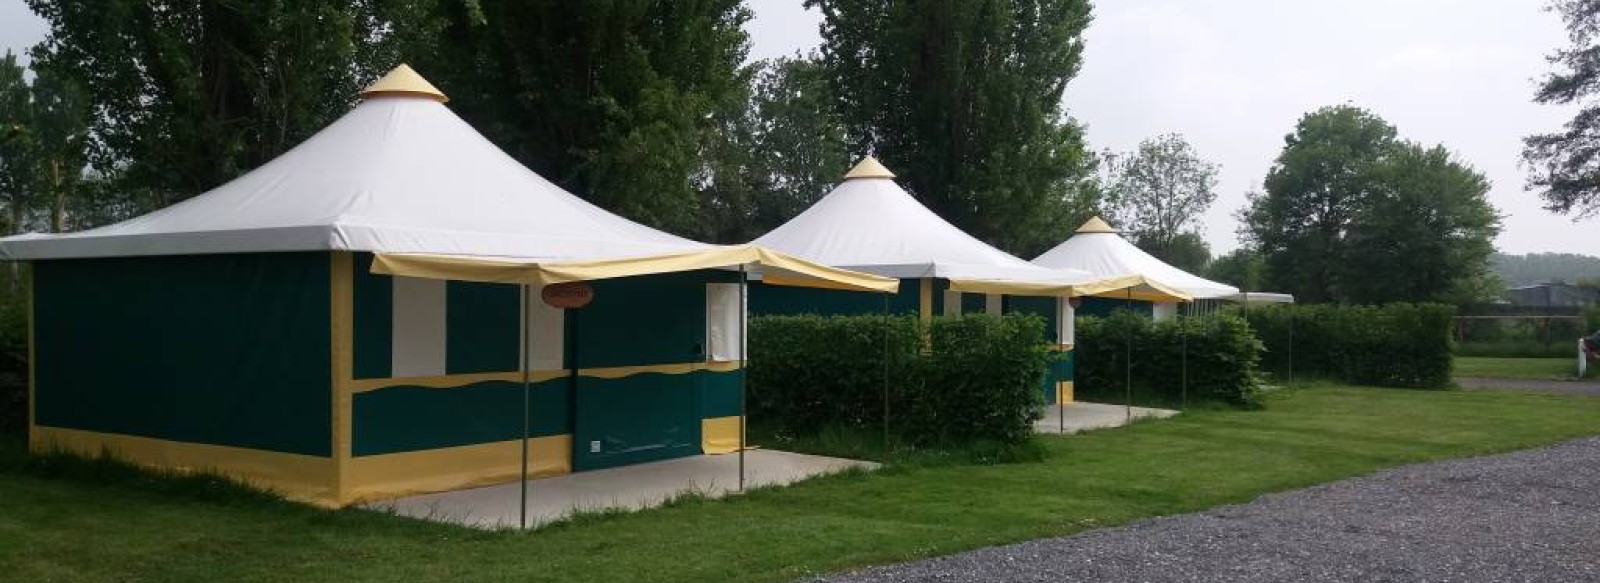 Camping du Val de Sarthe - bungalows toile